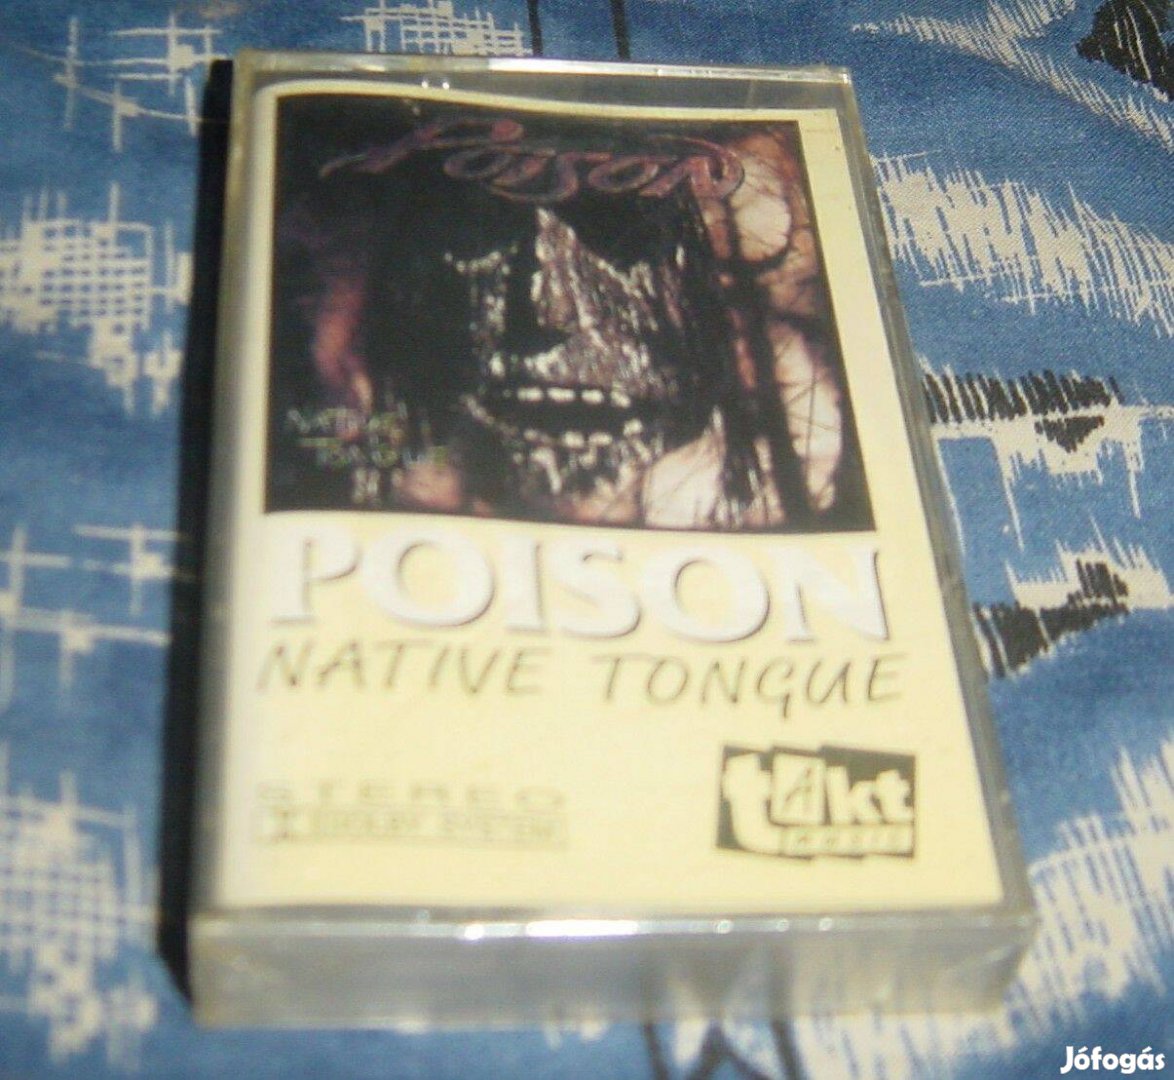 Kazetta - Poison - Native Tongue (bontatlan / Polski ) 1993